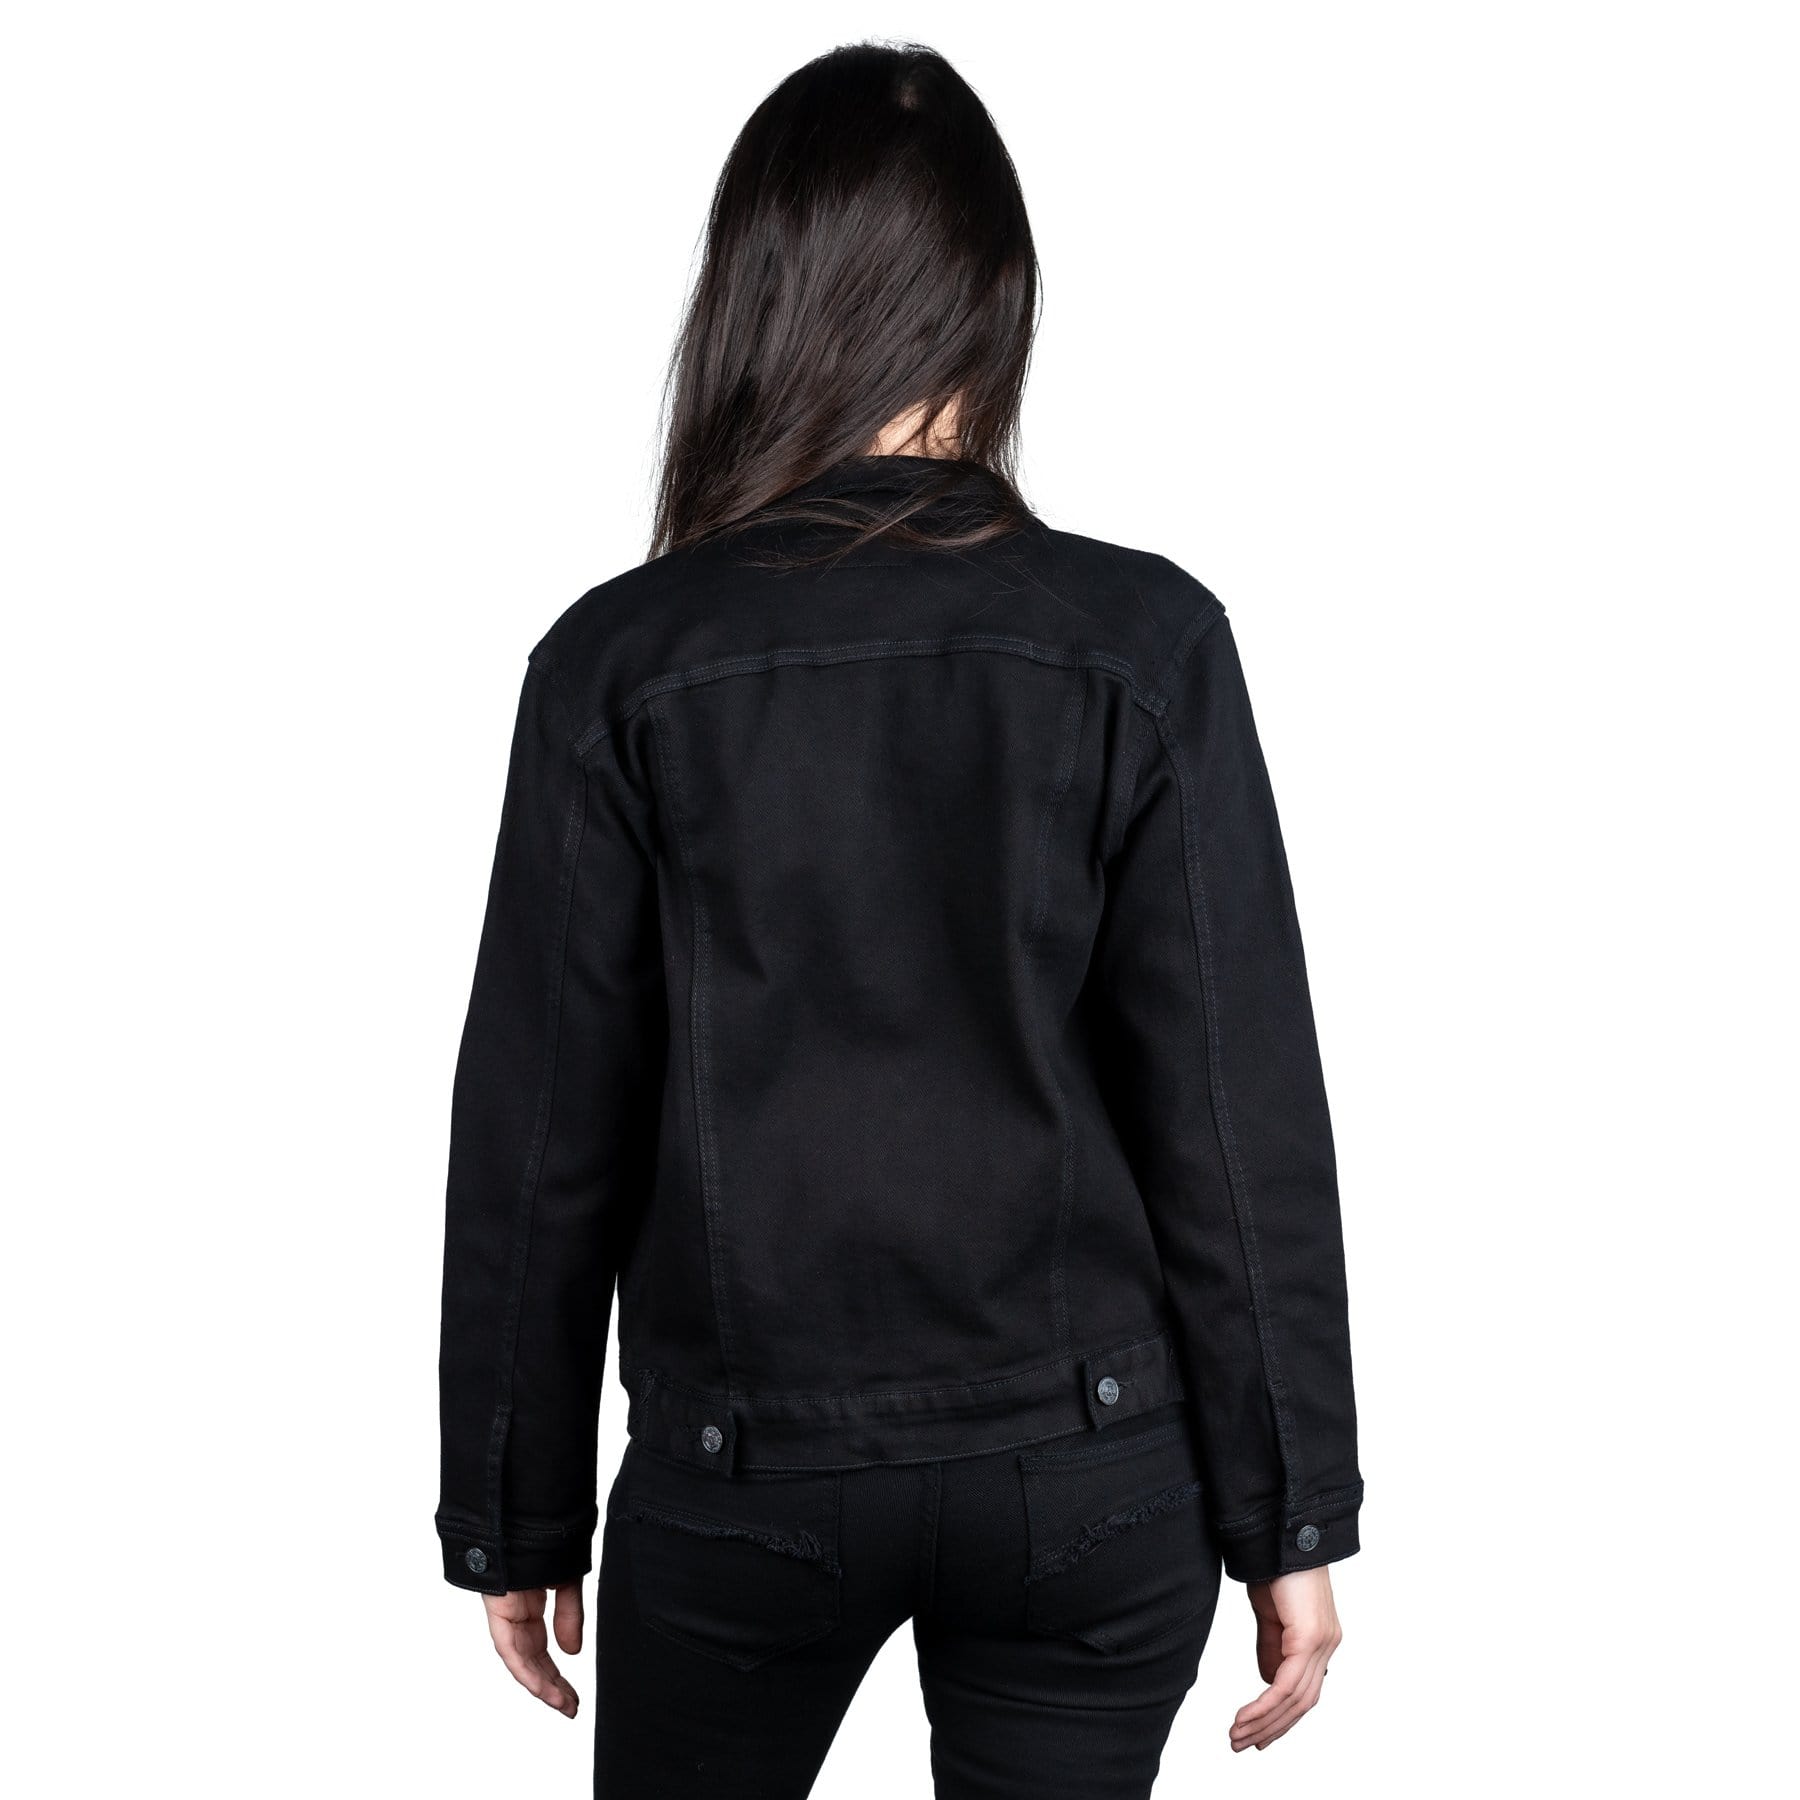 Wornstar Clothing Unisex Jacket. Idolmaker Unisex Denim Jacket - Black